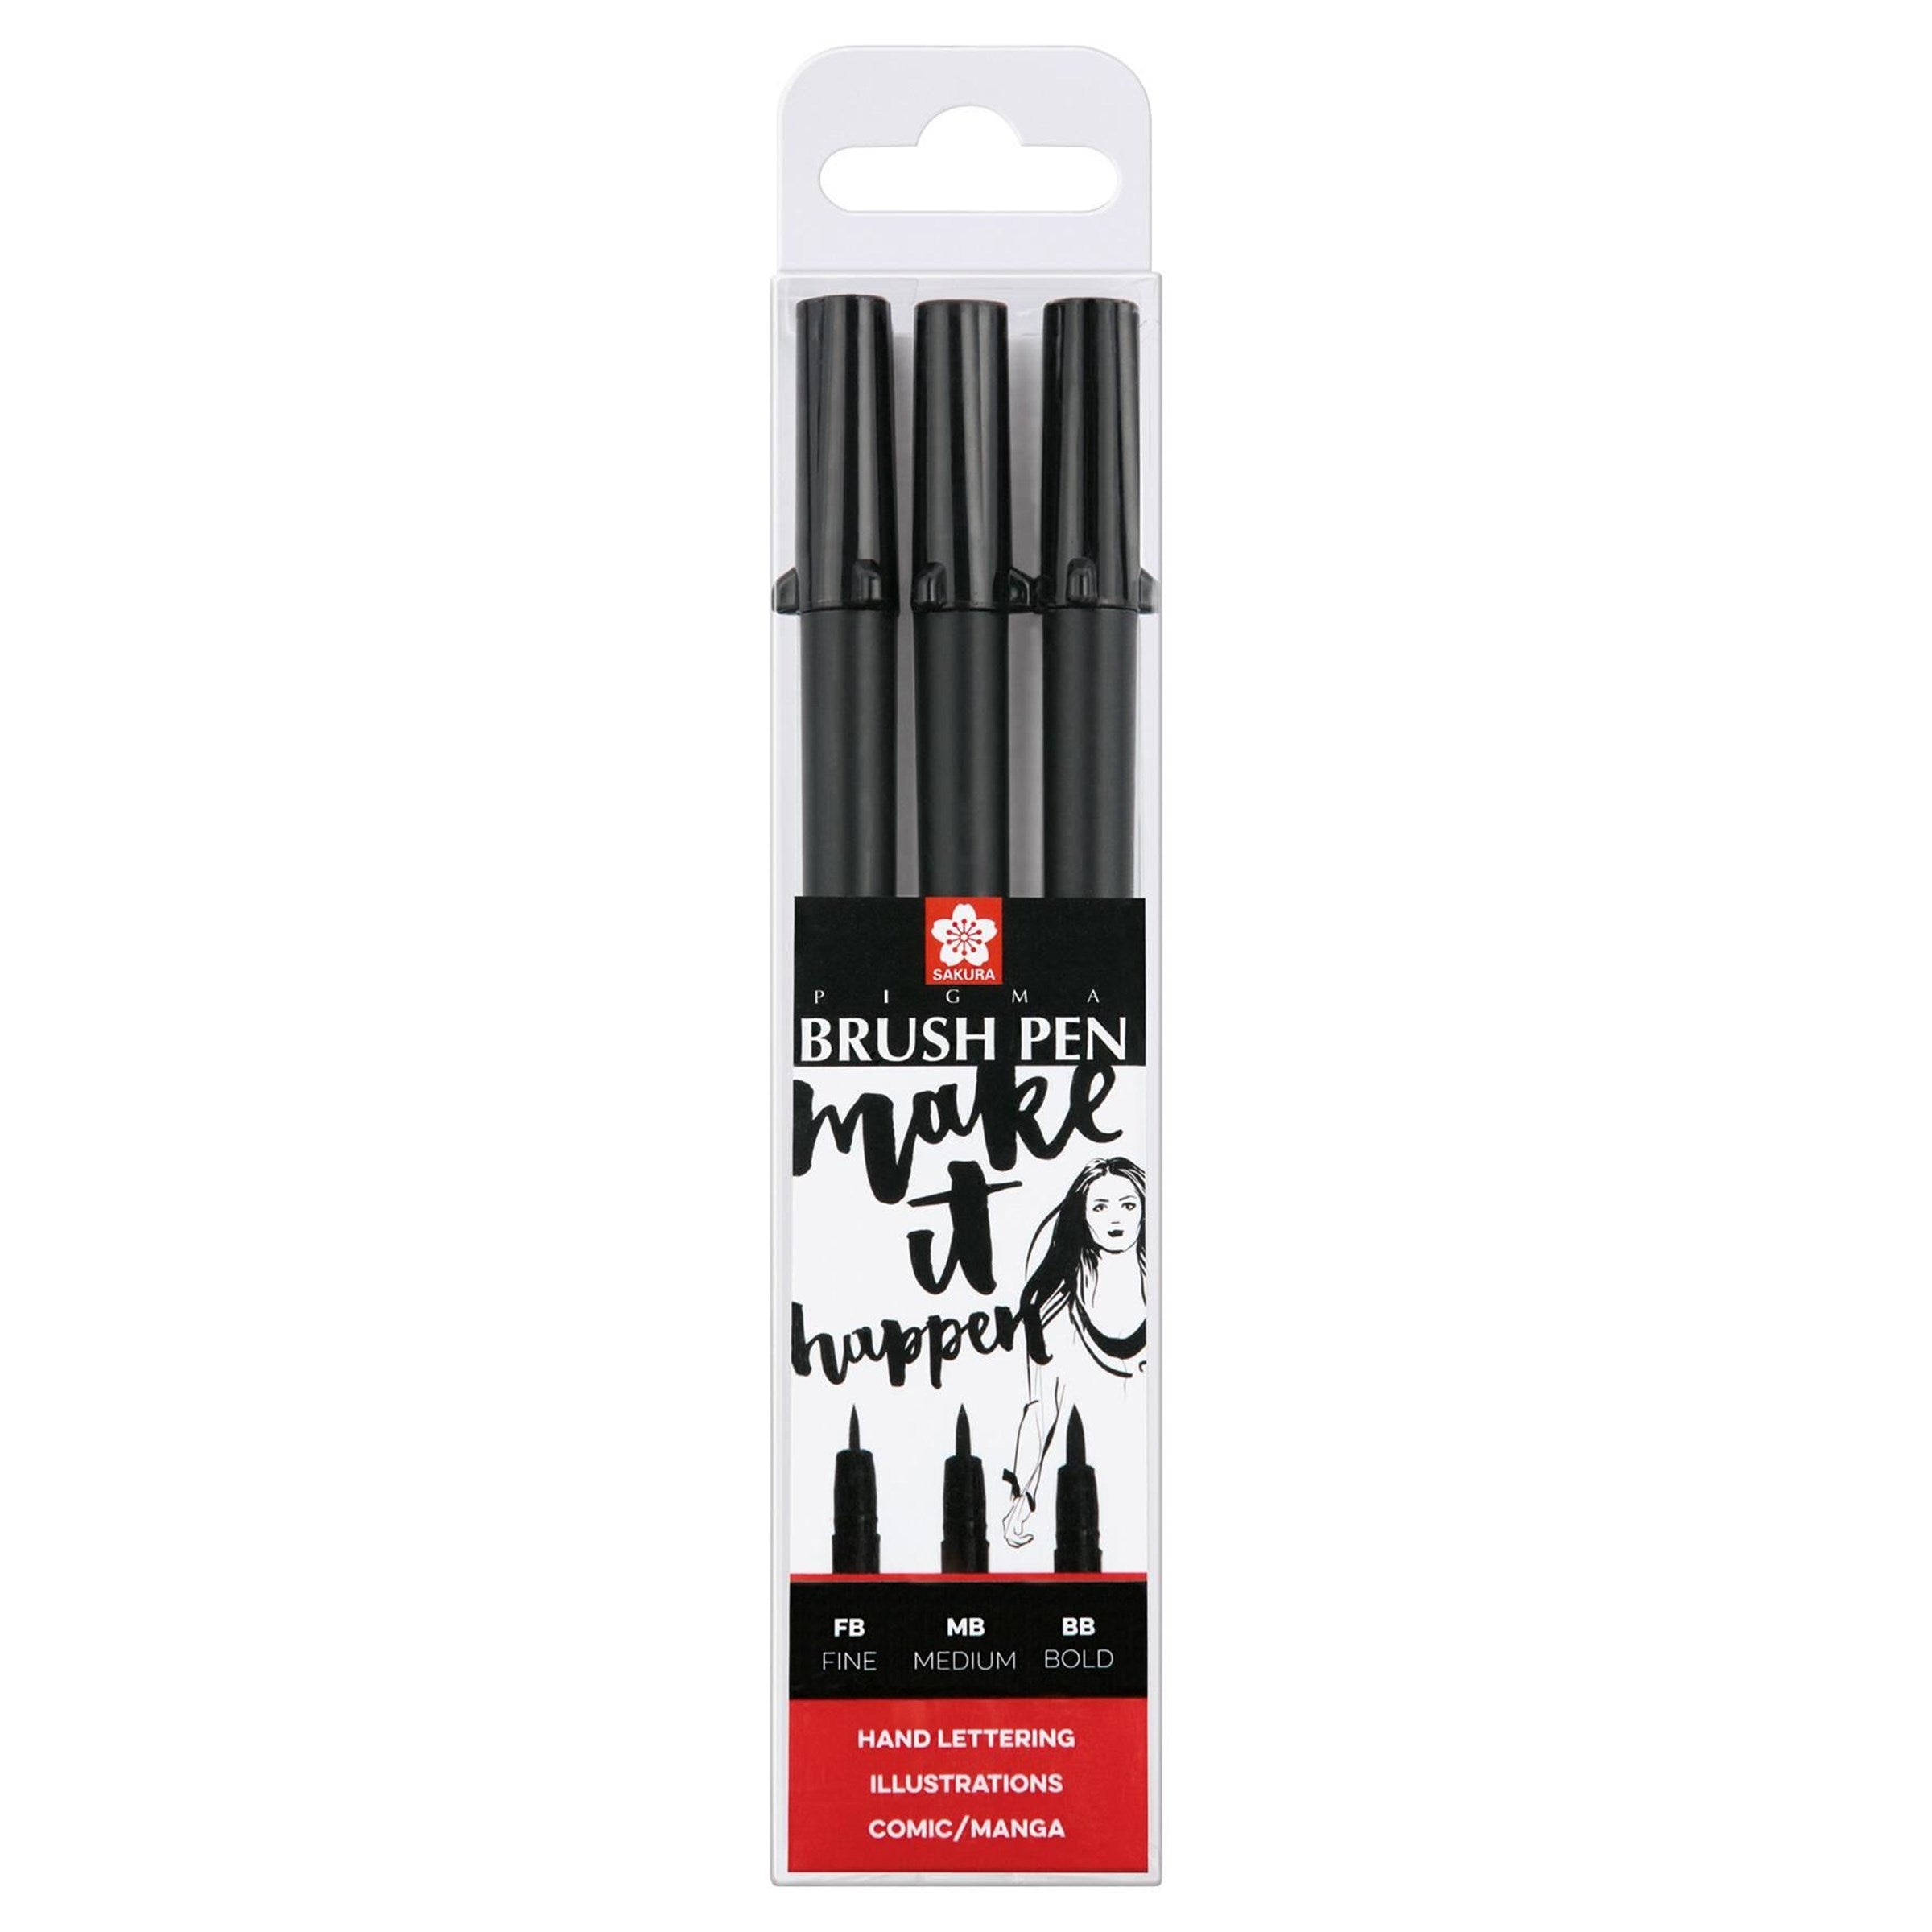 Pigma Brush Pen set | 3 sizes, black